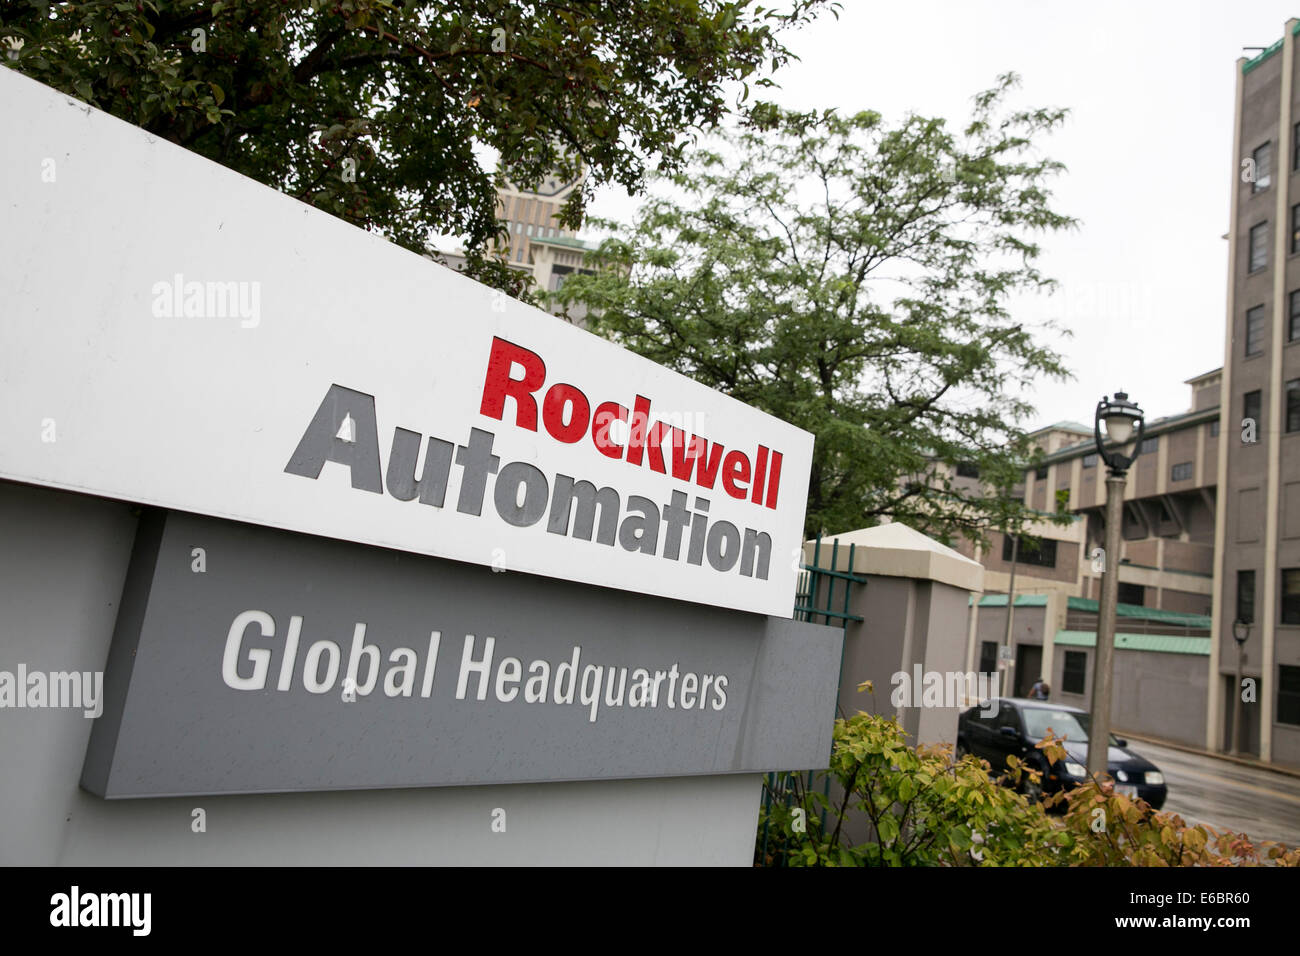 Le siège de Rockwell Automation à Milwaukee, Wisconsin. Banque D'Images